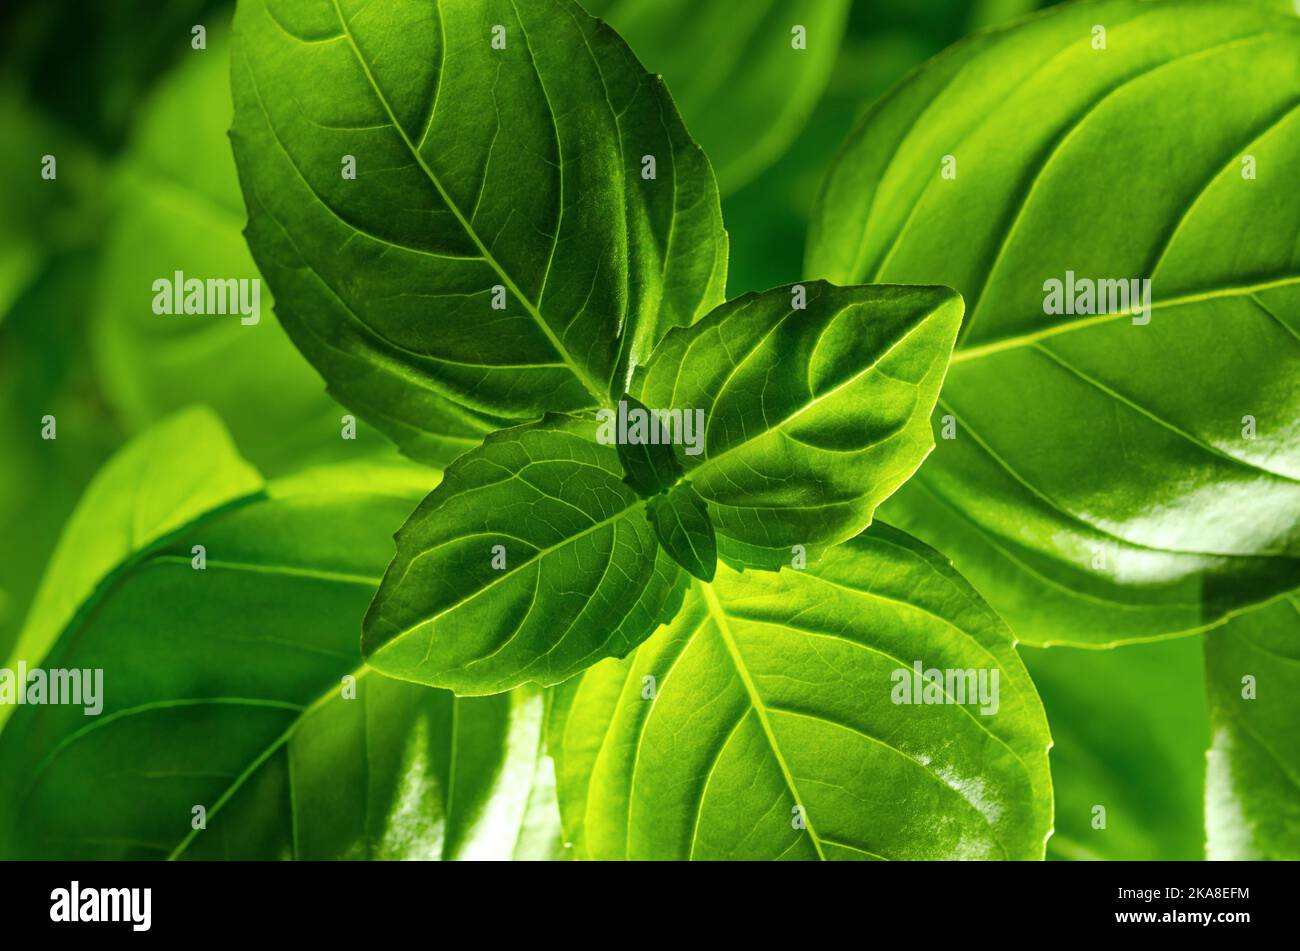 La lumière brille à travers les feuilles de basilic. Aussi connu sous le nom de basilic doux, grand ou génovese, l'Ocimum basilicum, une herbe culinaire dans la famille des lamiaceae de menthe. Banque D'Images